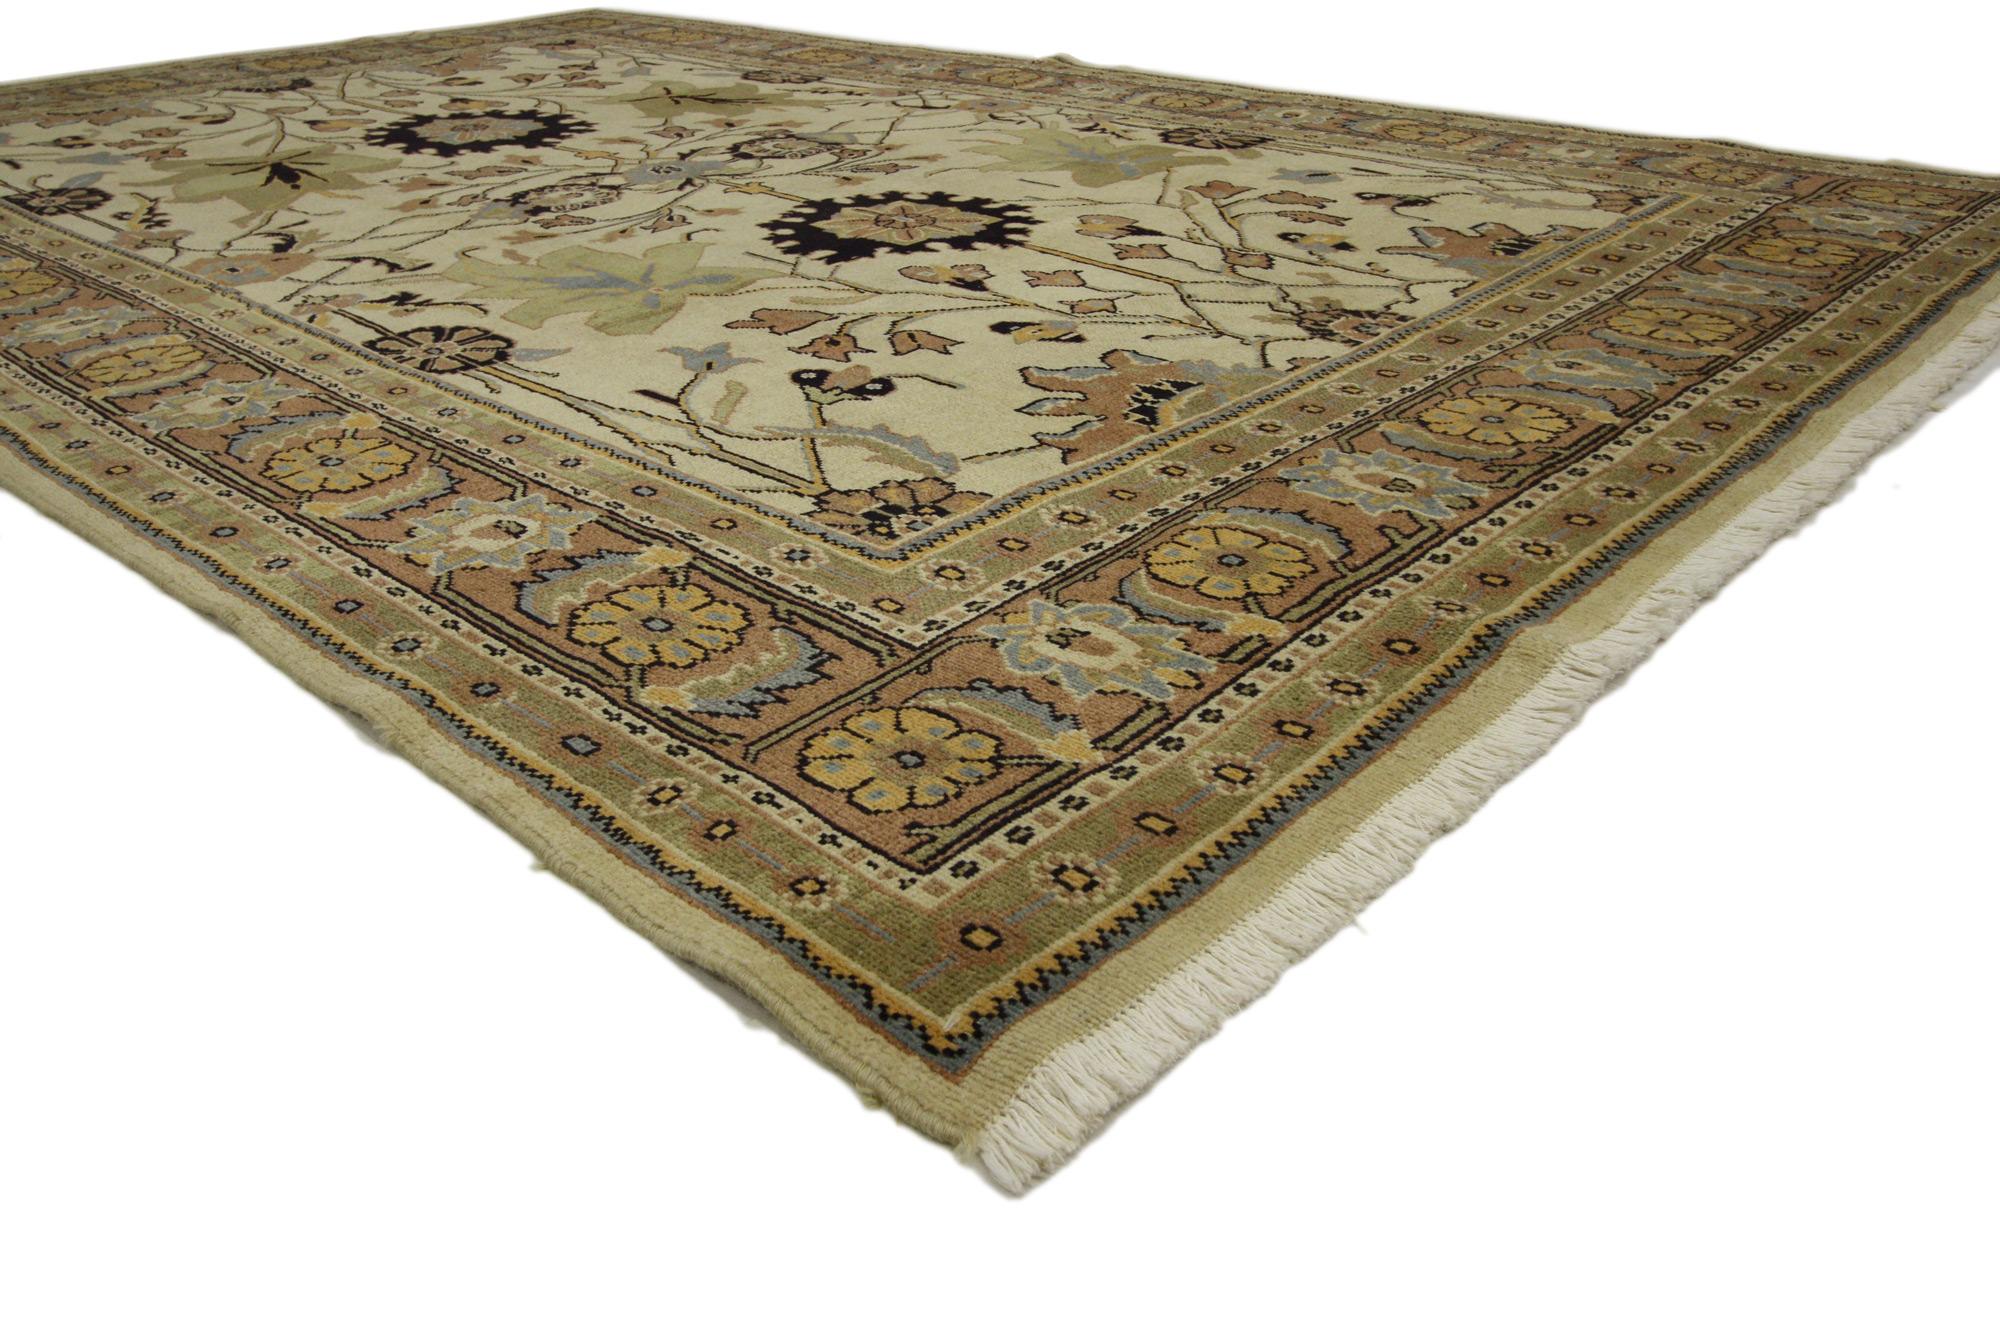 75085 Vintage Persisch Mahal Teppich 06'08 X 10'05.
Dieser persische Mahal-Teppich im Vintage-Stil strahlt mit seinem modernen, traditionellen Stil eine bemerkenswerte Raffinesse aus. Eine schöne Darstellung von großformatigen Motiven, die so zart